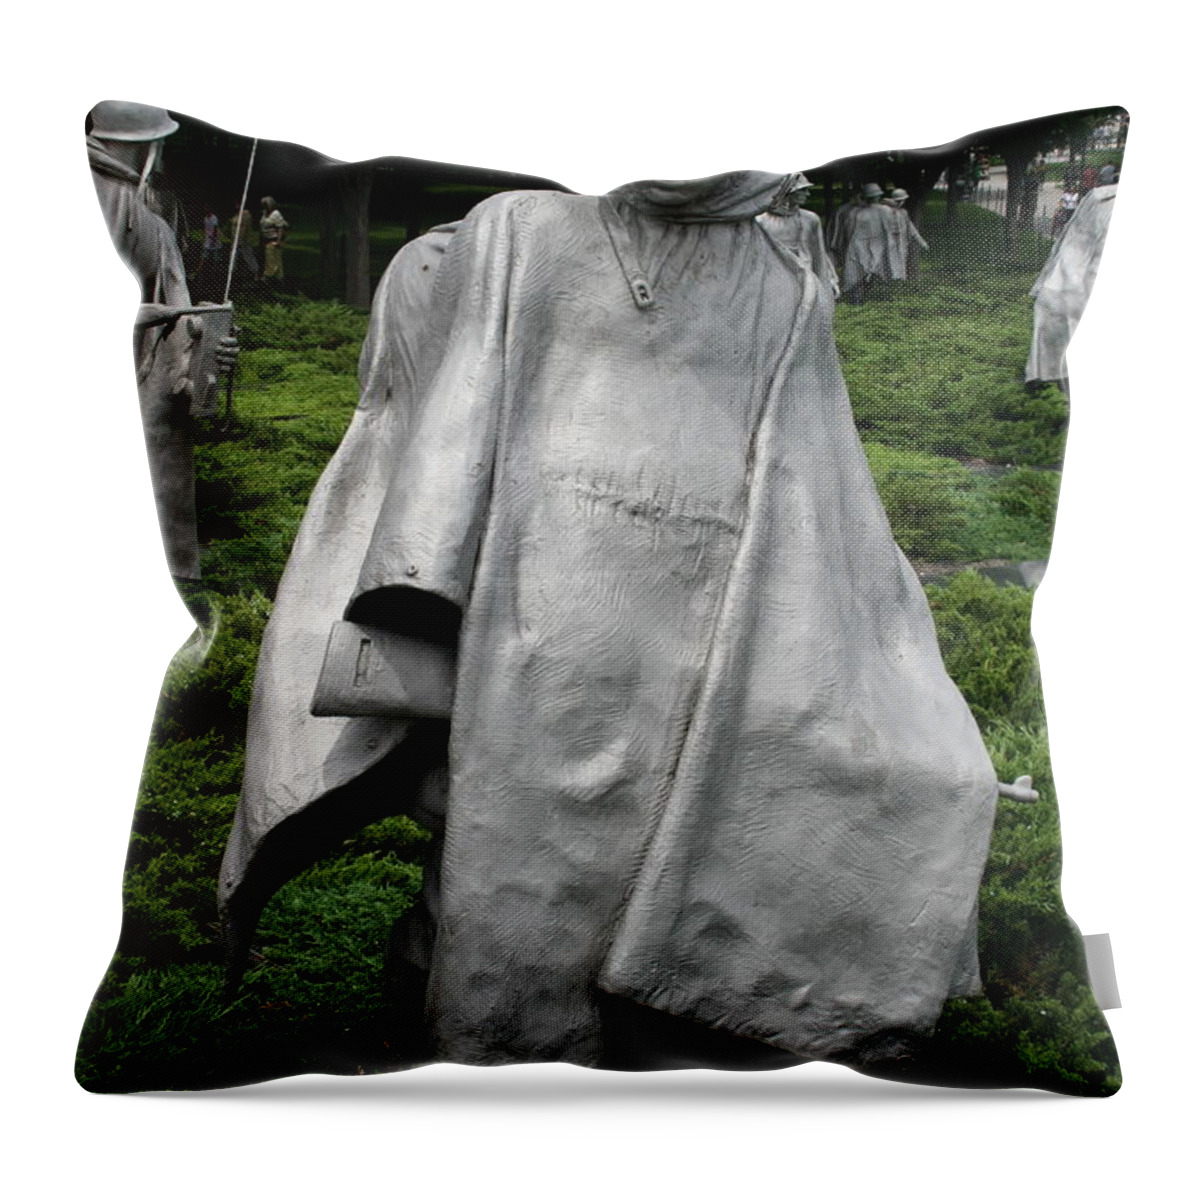 Sculpture Throw Pillow featuring the photograph Korean War Veterans Memorial 2 by Jim Gillen